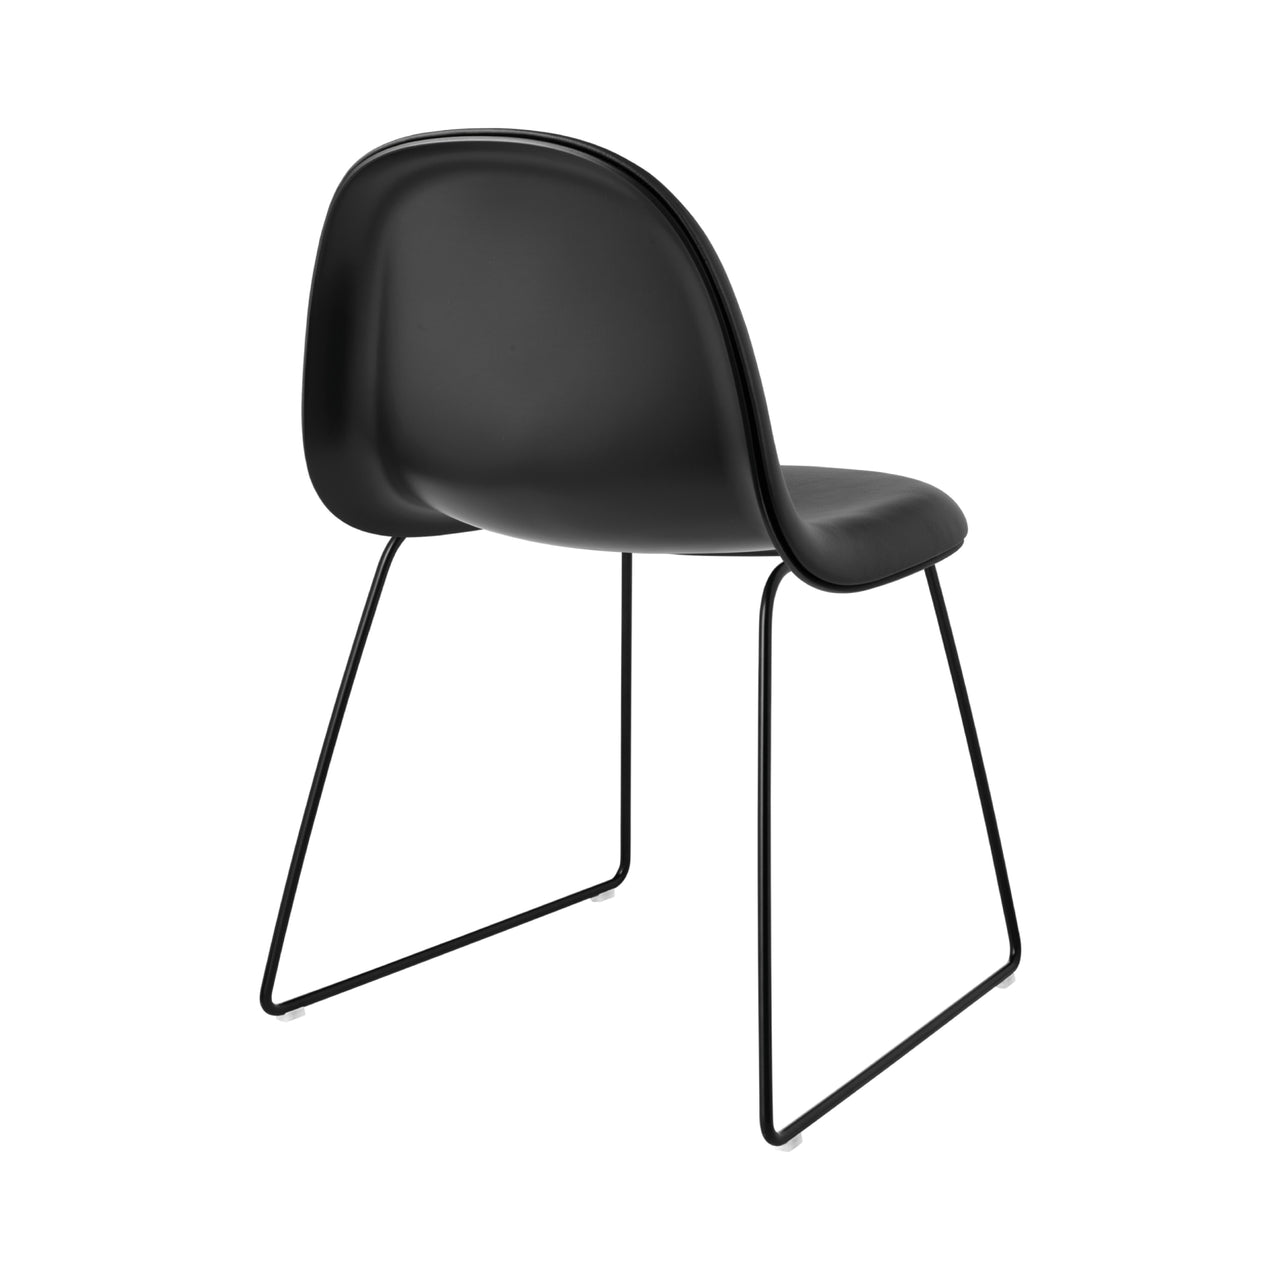 3D Dining Chair Sledge Base: Plastic Shell + Front Upholstered + Black Semi Matt